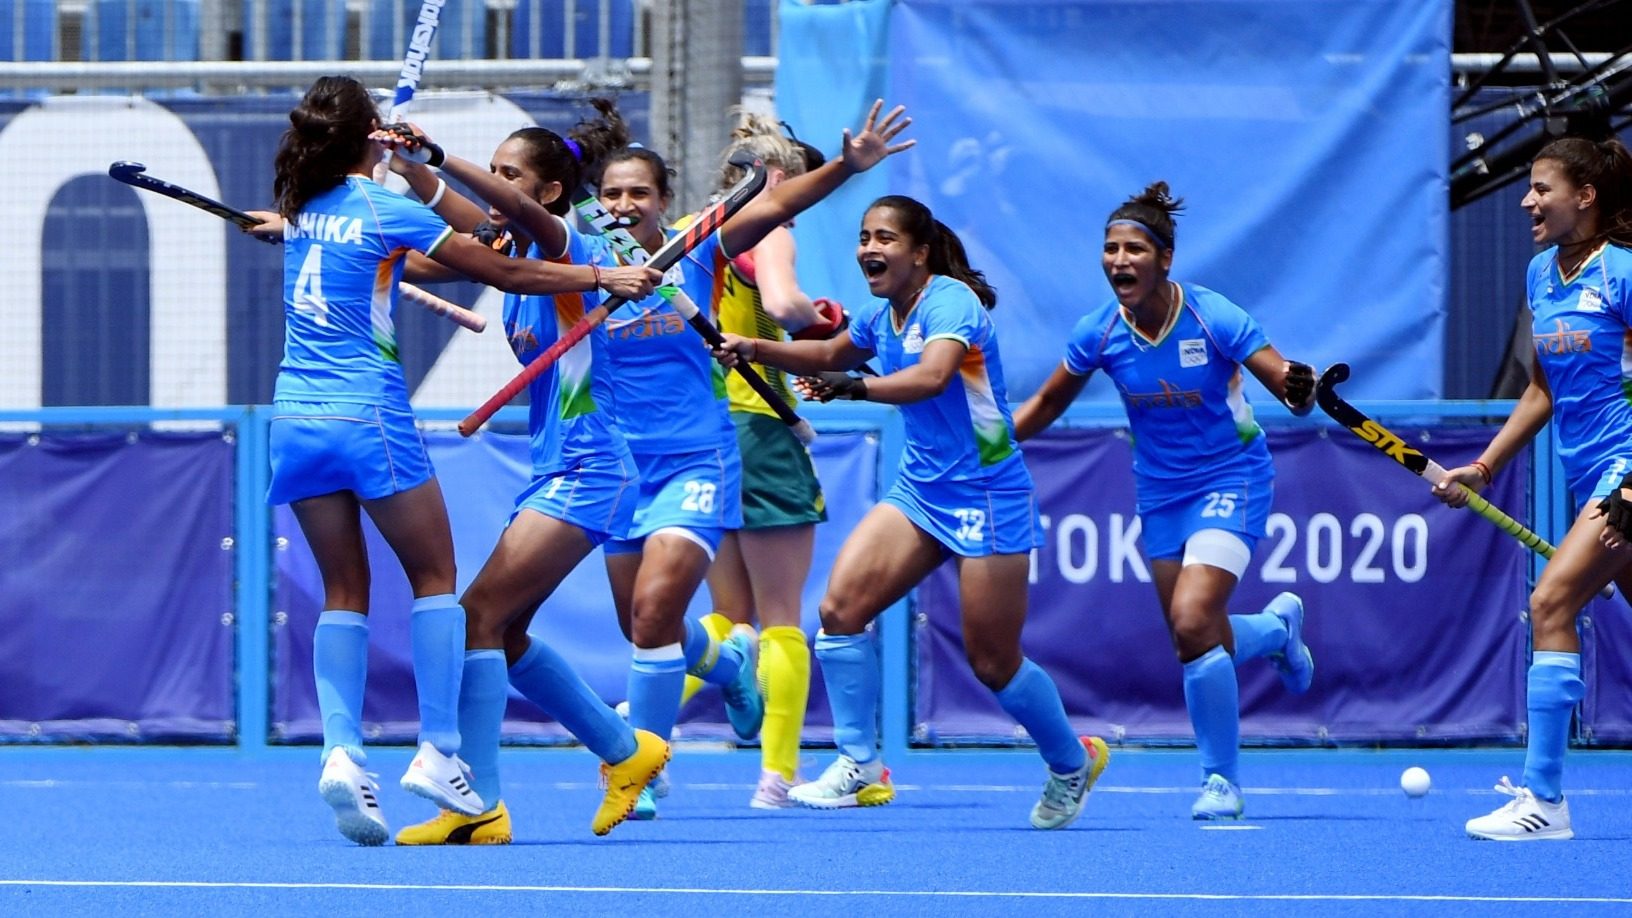 Olympics-Hockey-India, Argentina women reach semis, Australia, Germany out